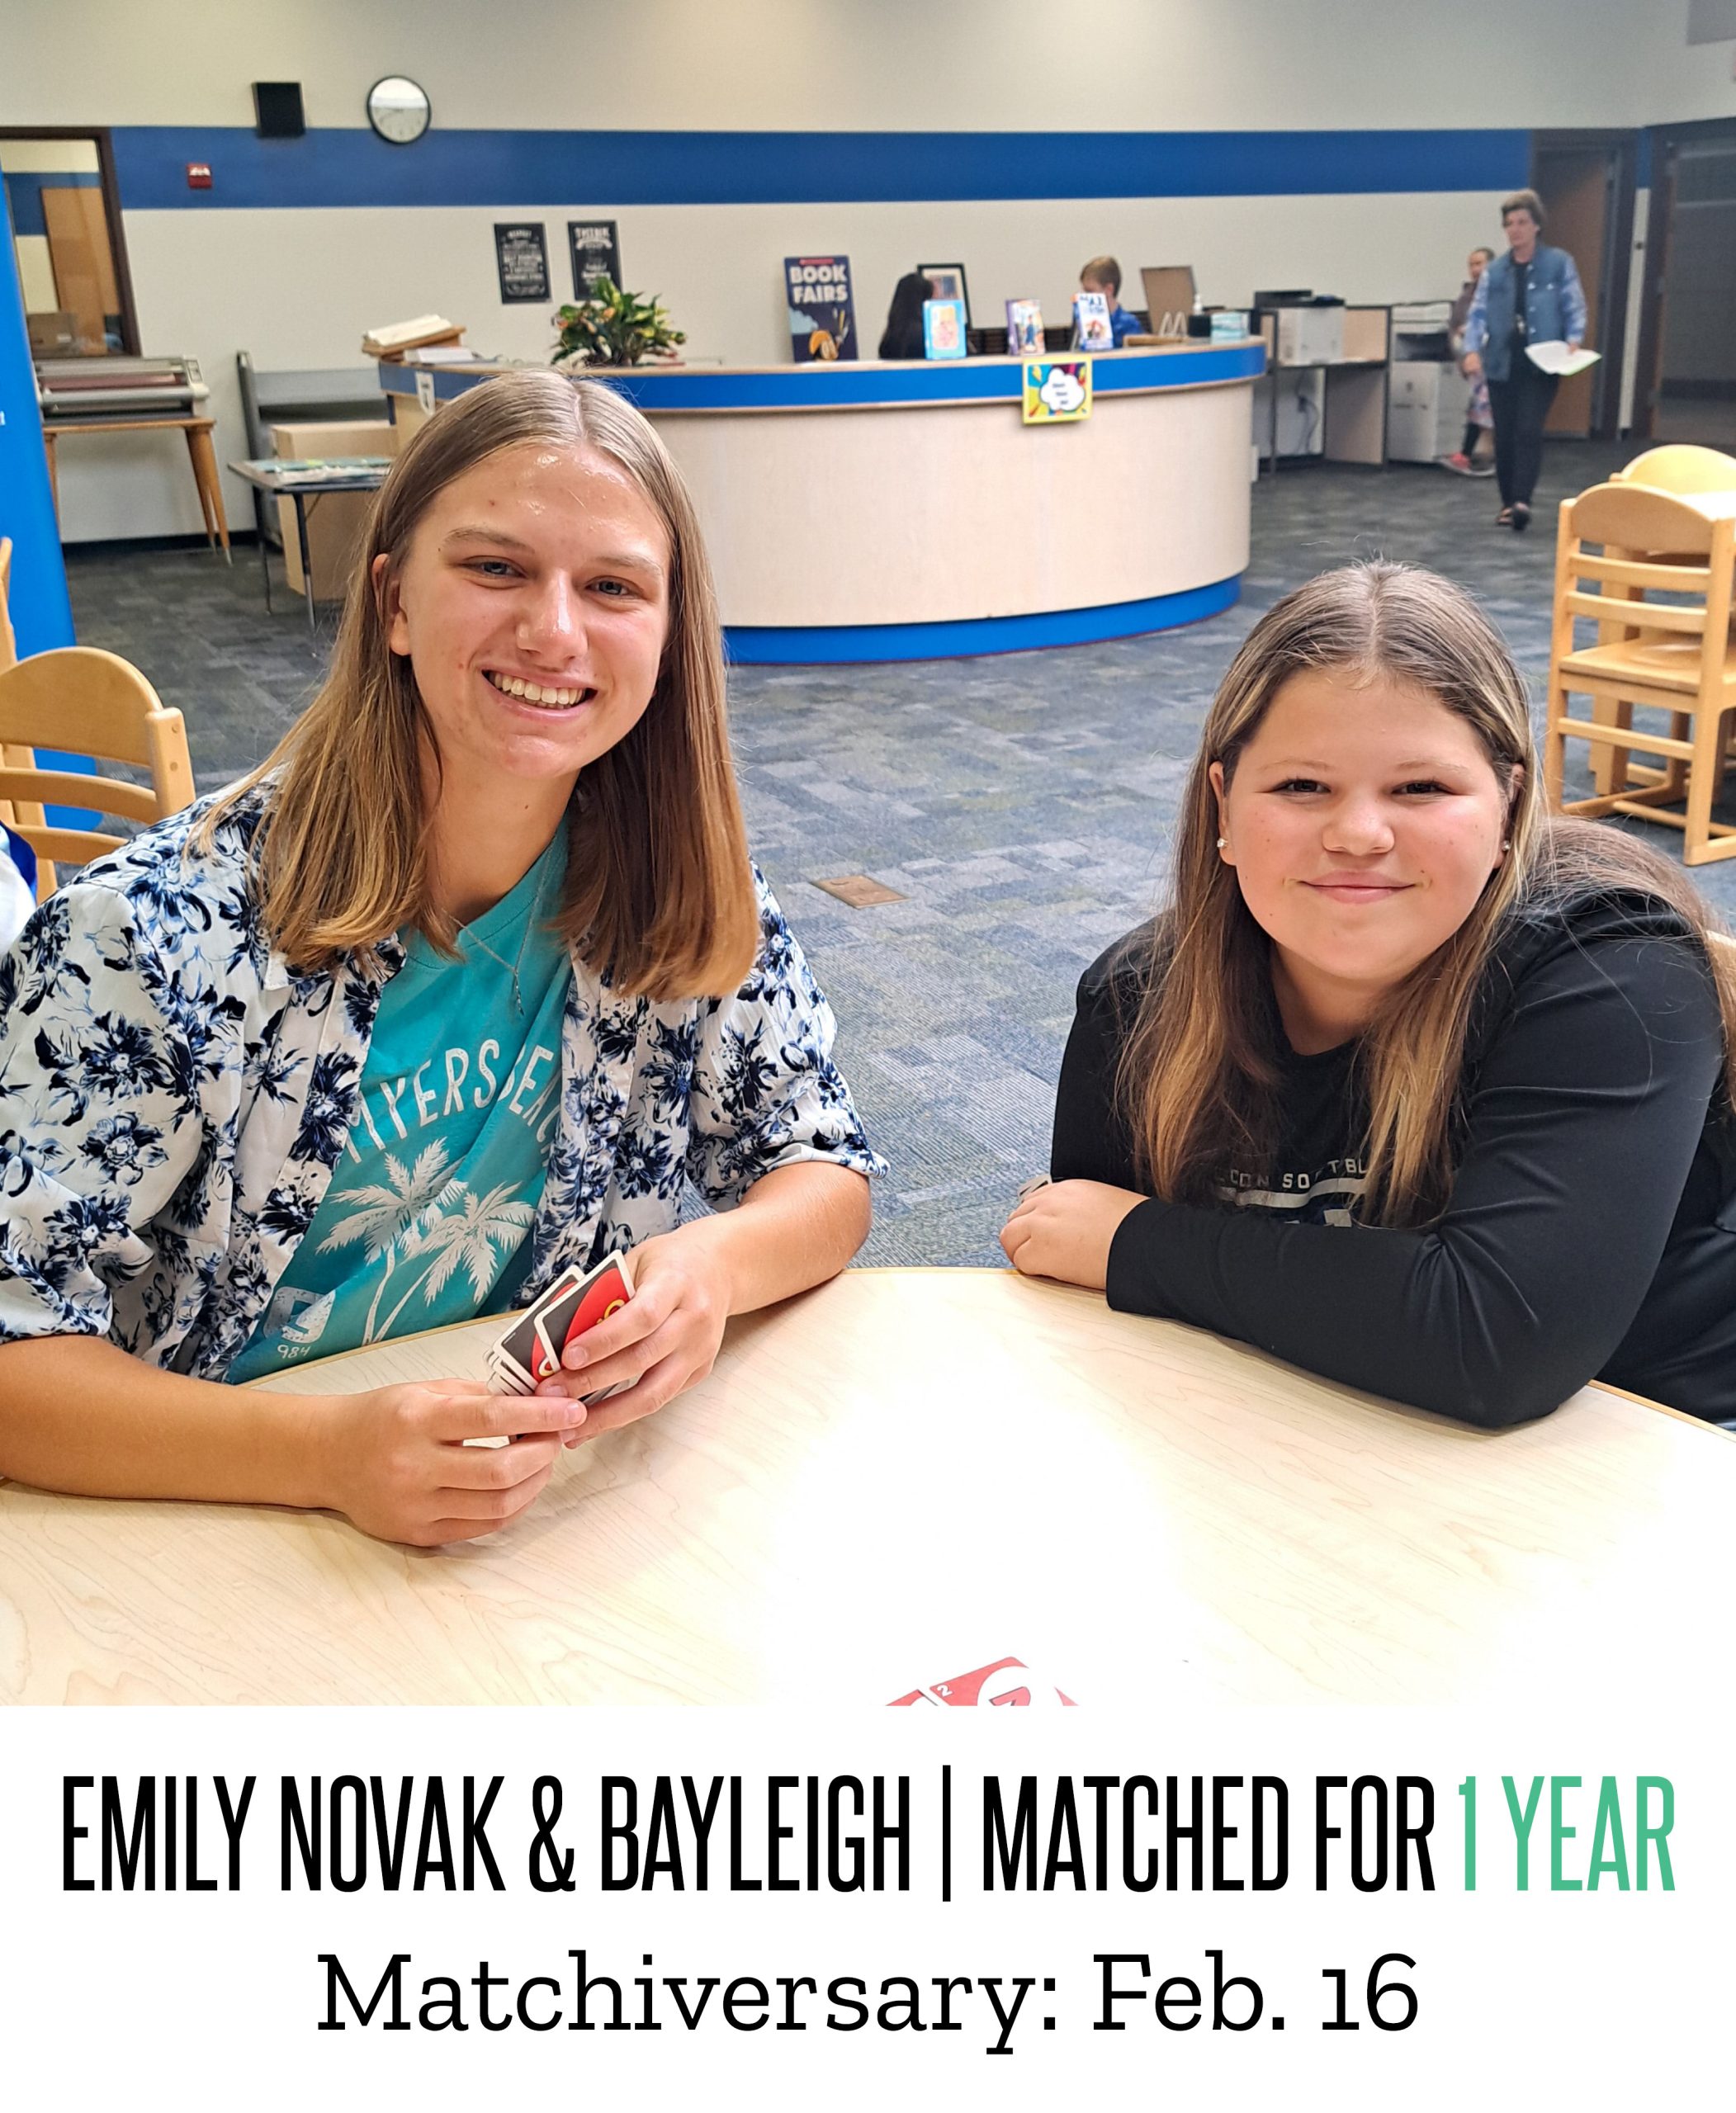 Emily & Bayleigh 1 Year Matchiversary